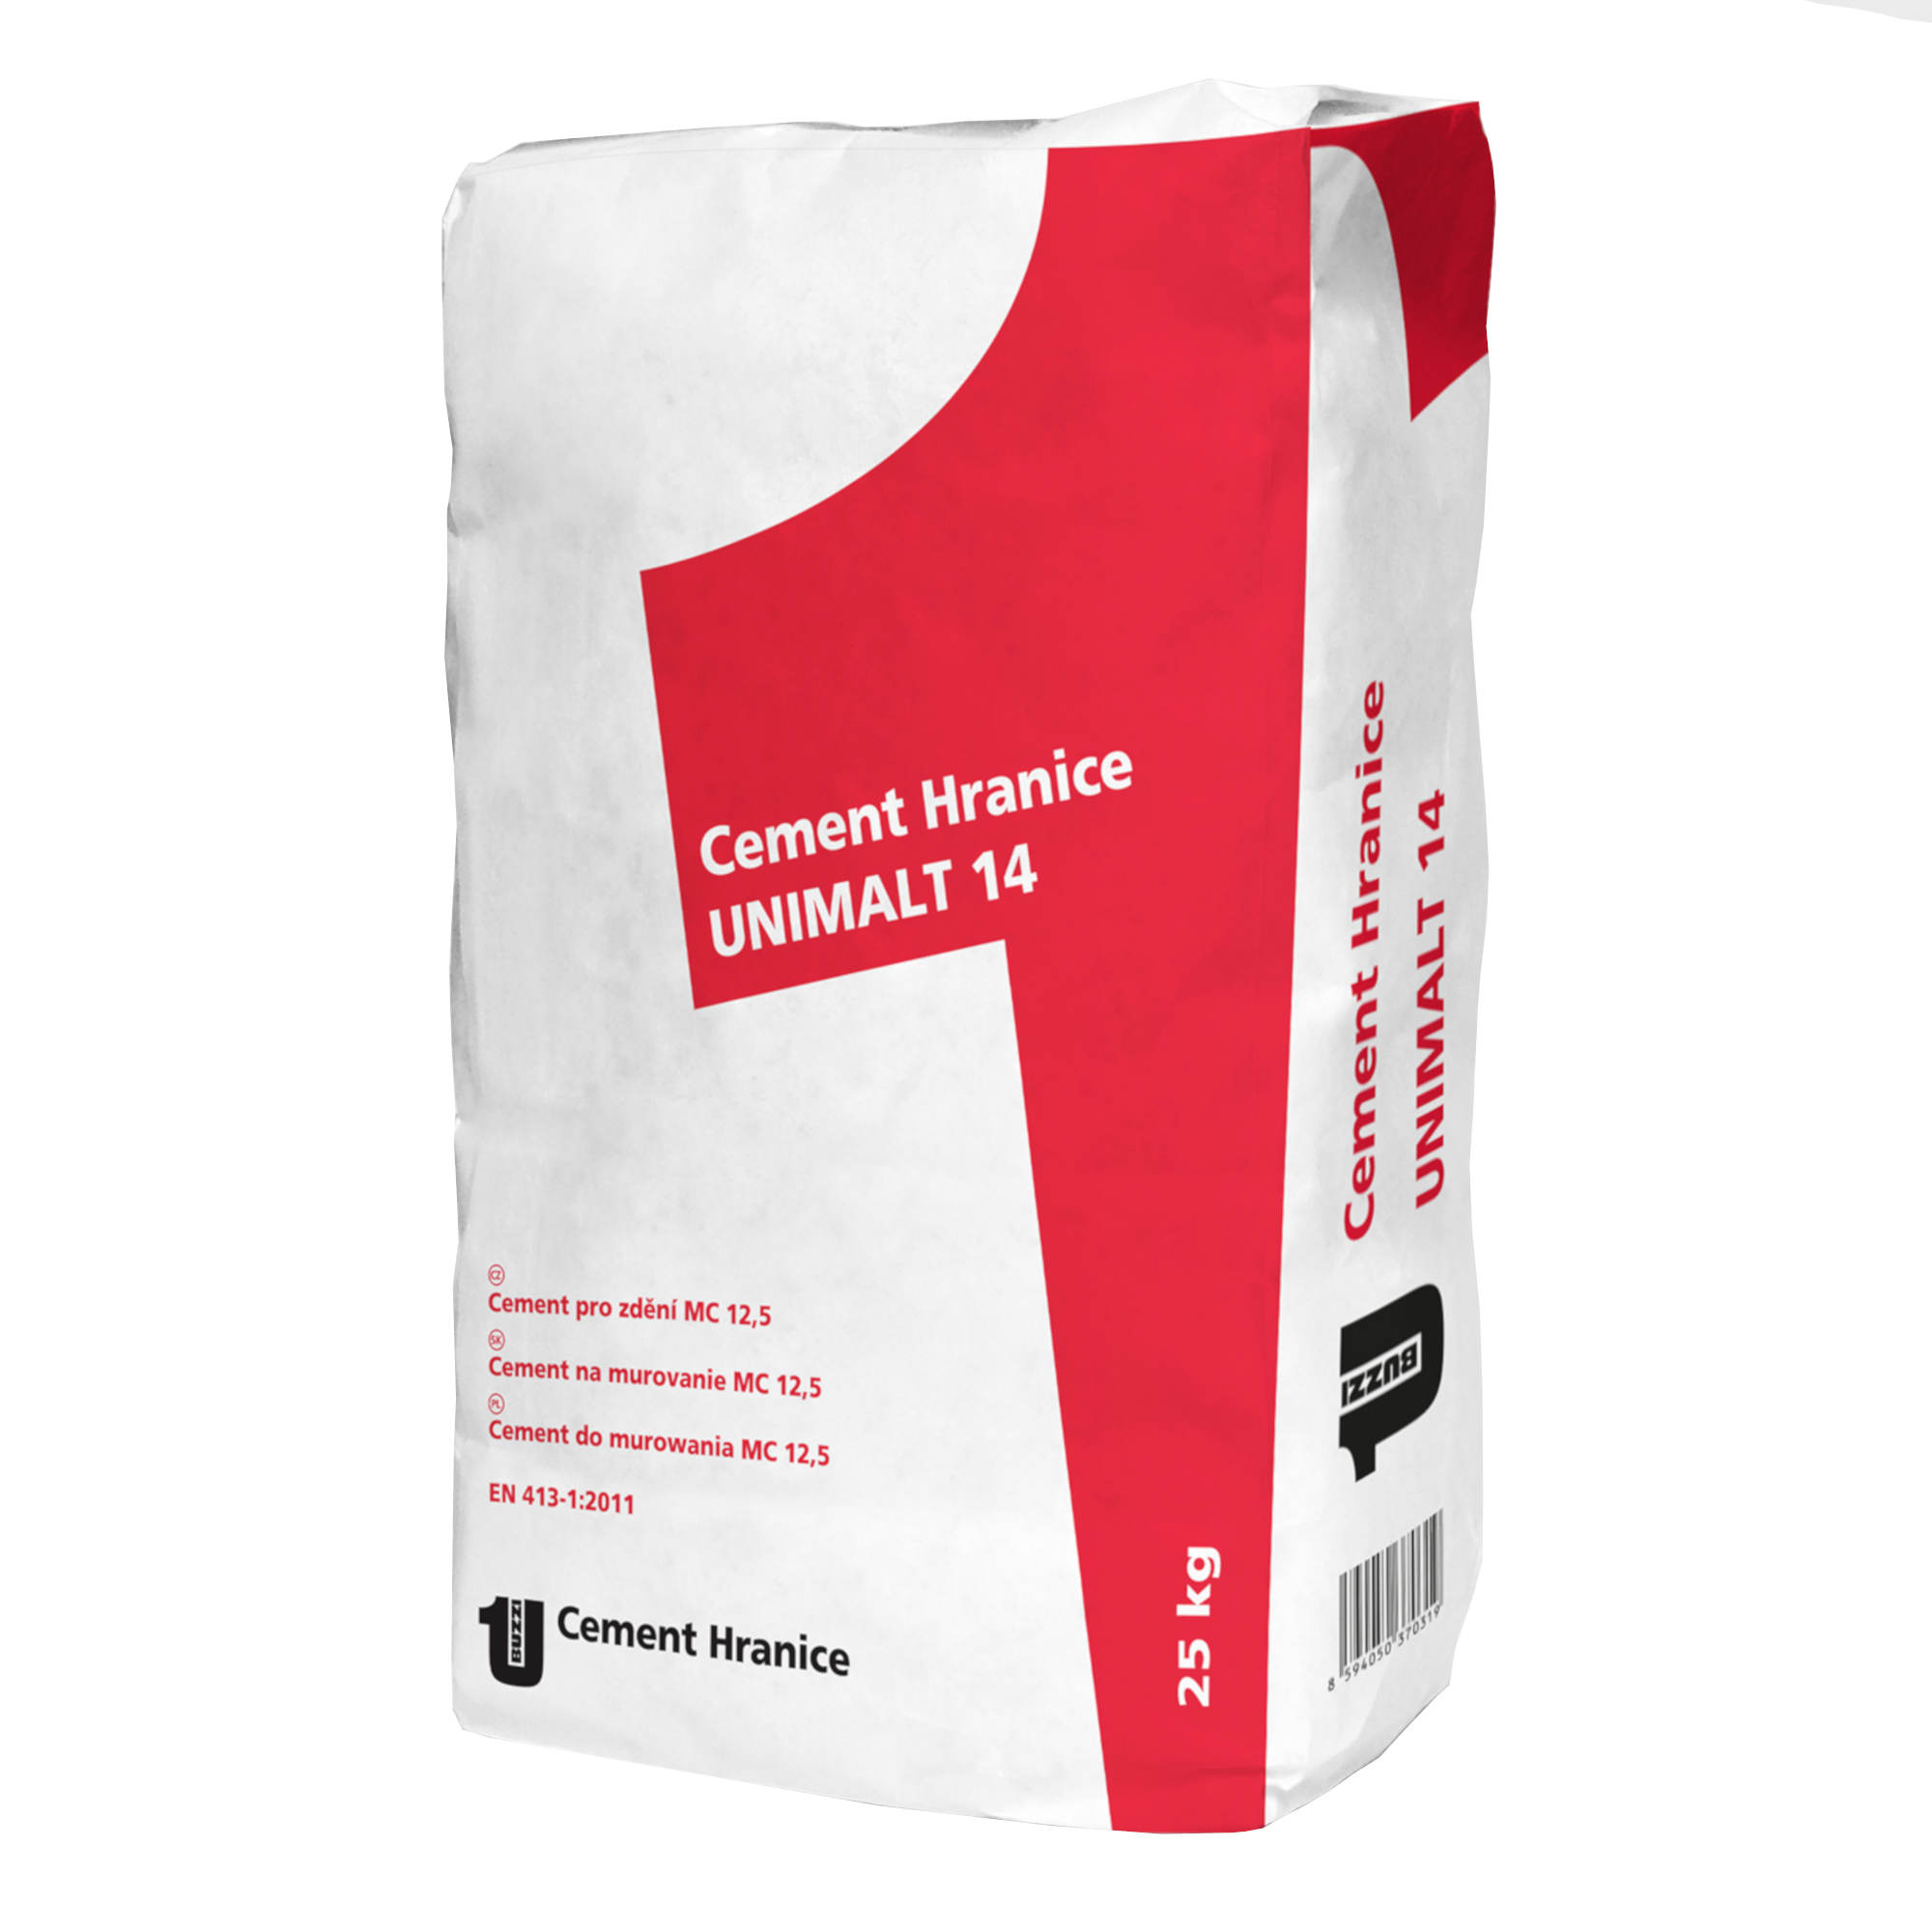 Cement pro zdění Hranice UNIMALT 14 25 kg